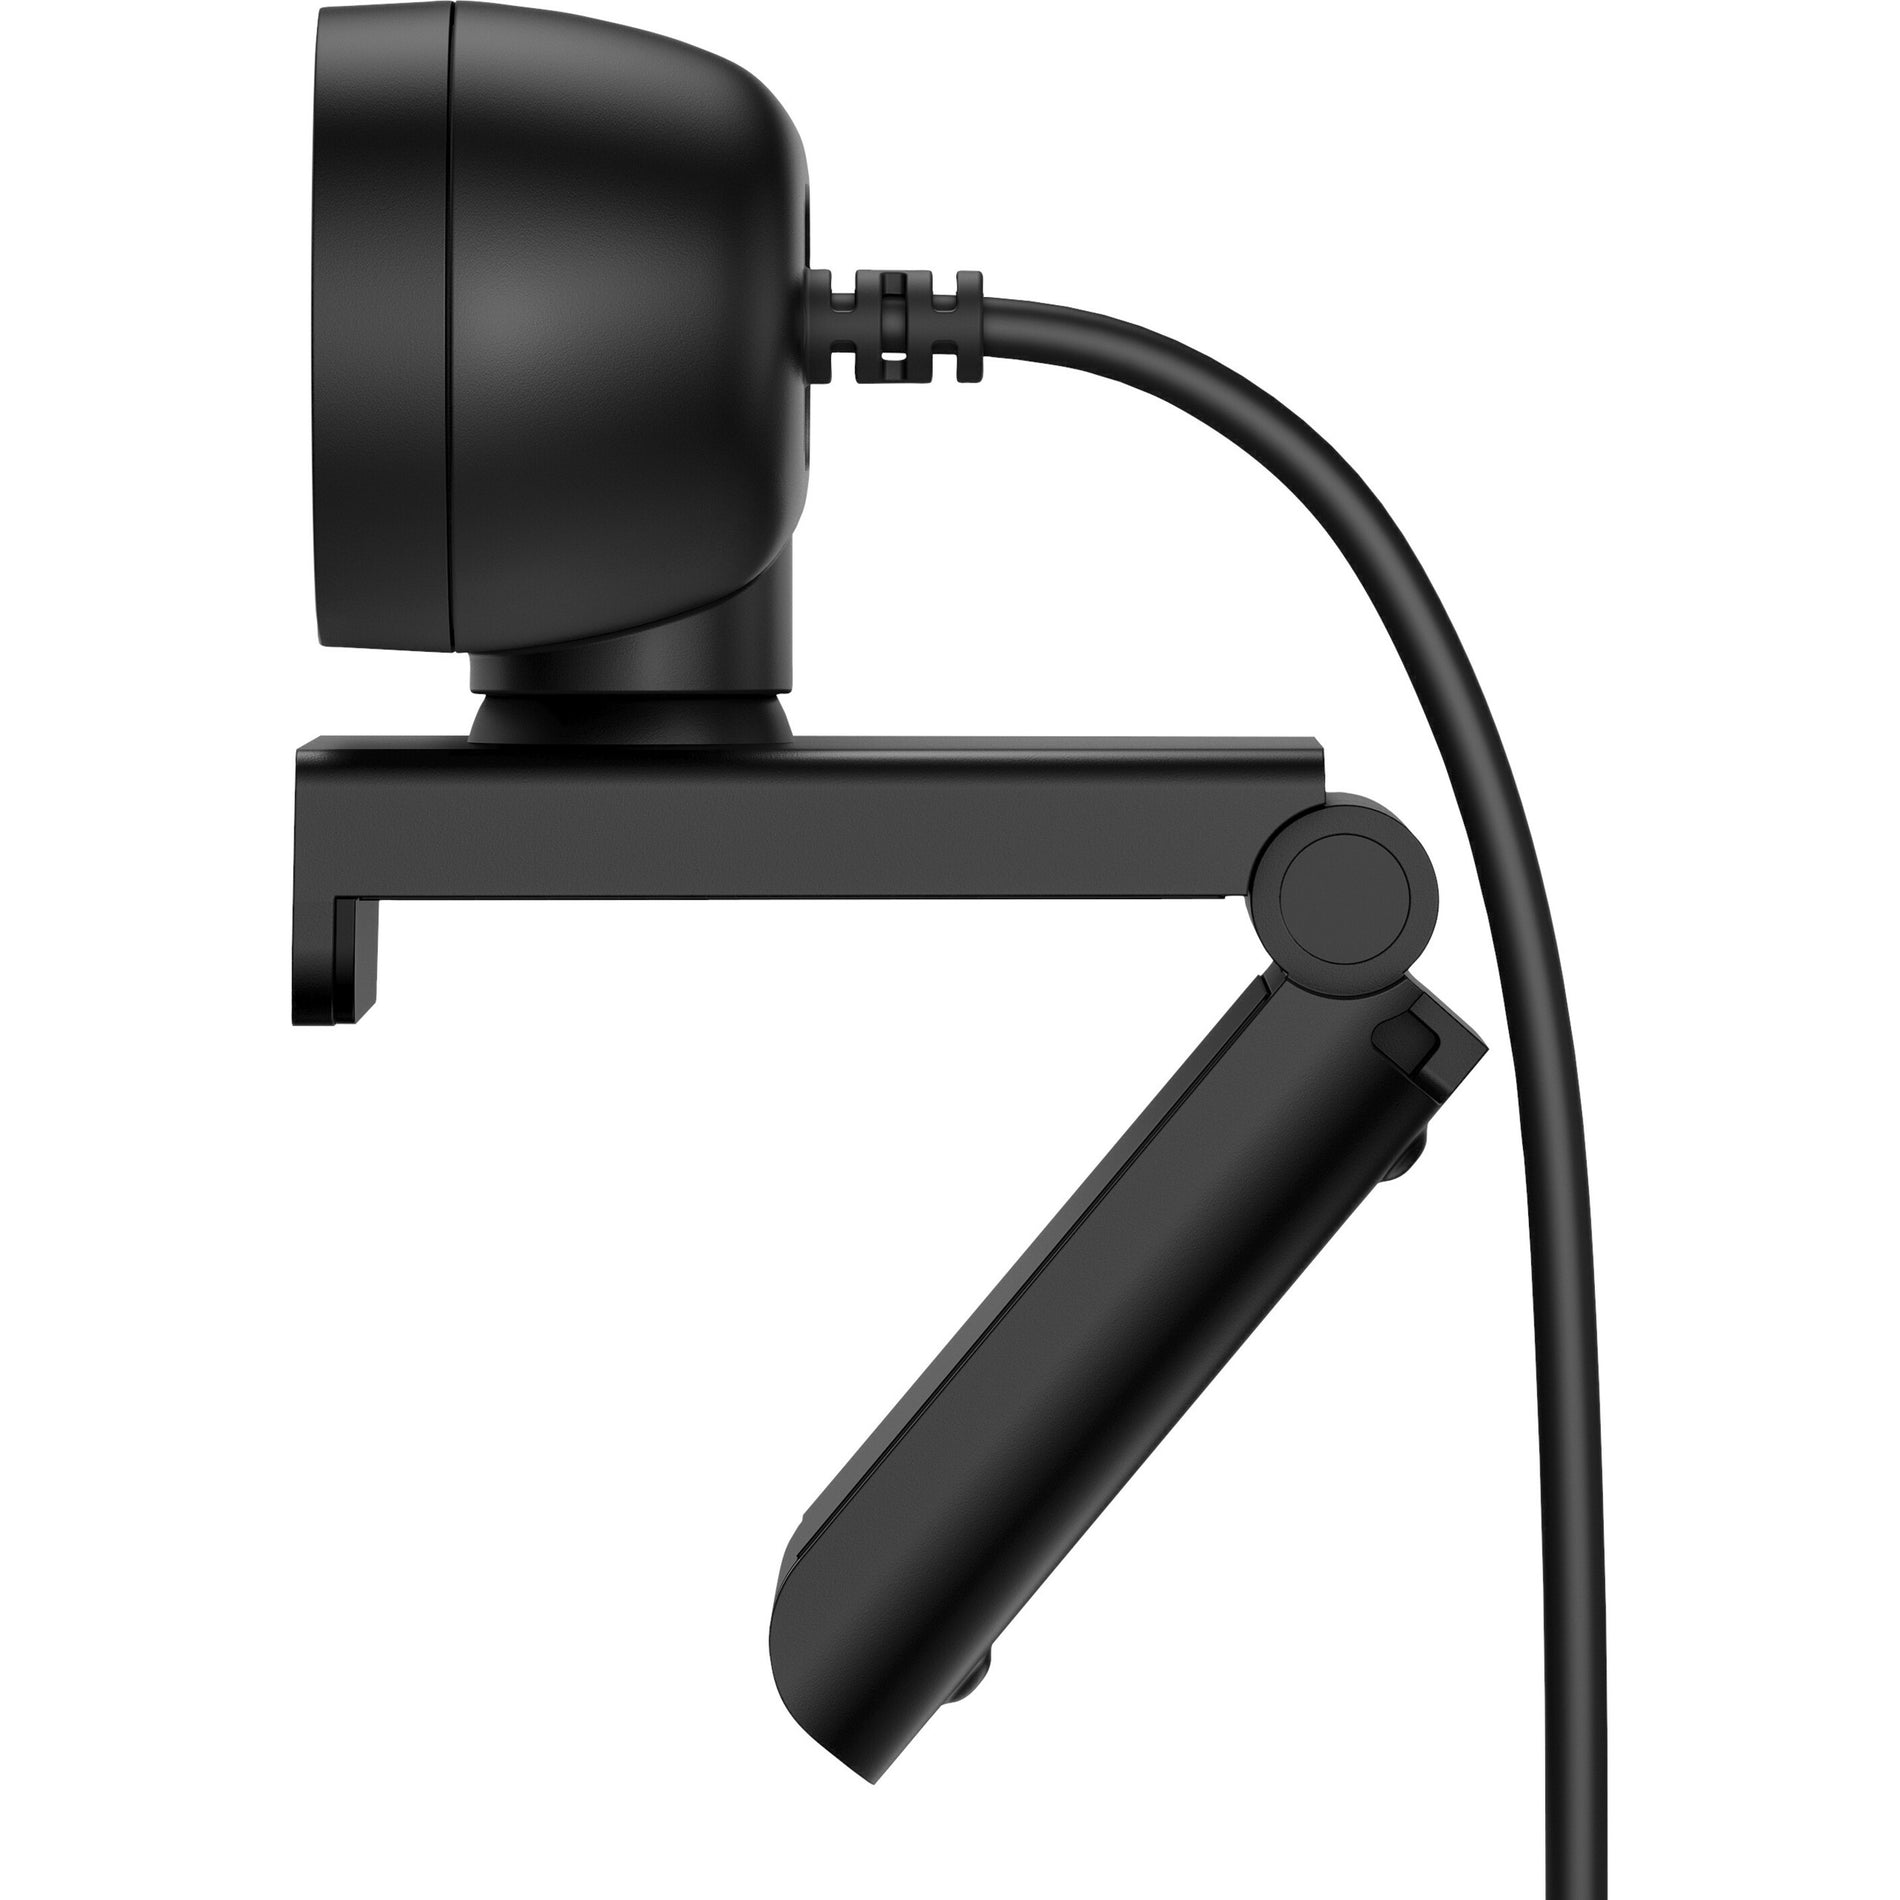 惠普 320全高清网络摄像头（HP 320 FHD Webcam） 30 fps 黑色 USB A型接口 产品名称： 惠普 (HP)